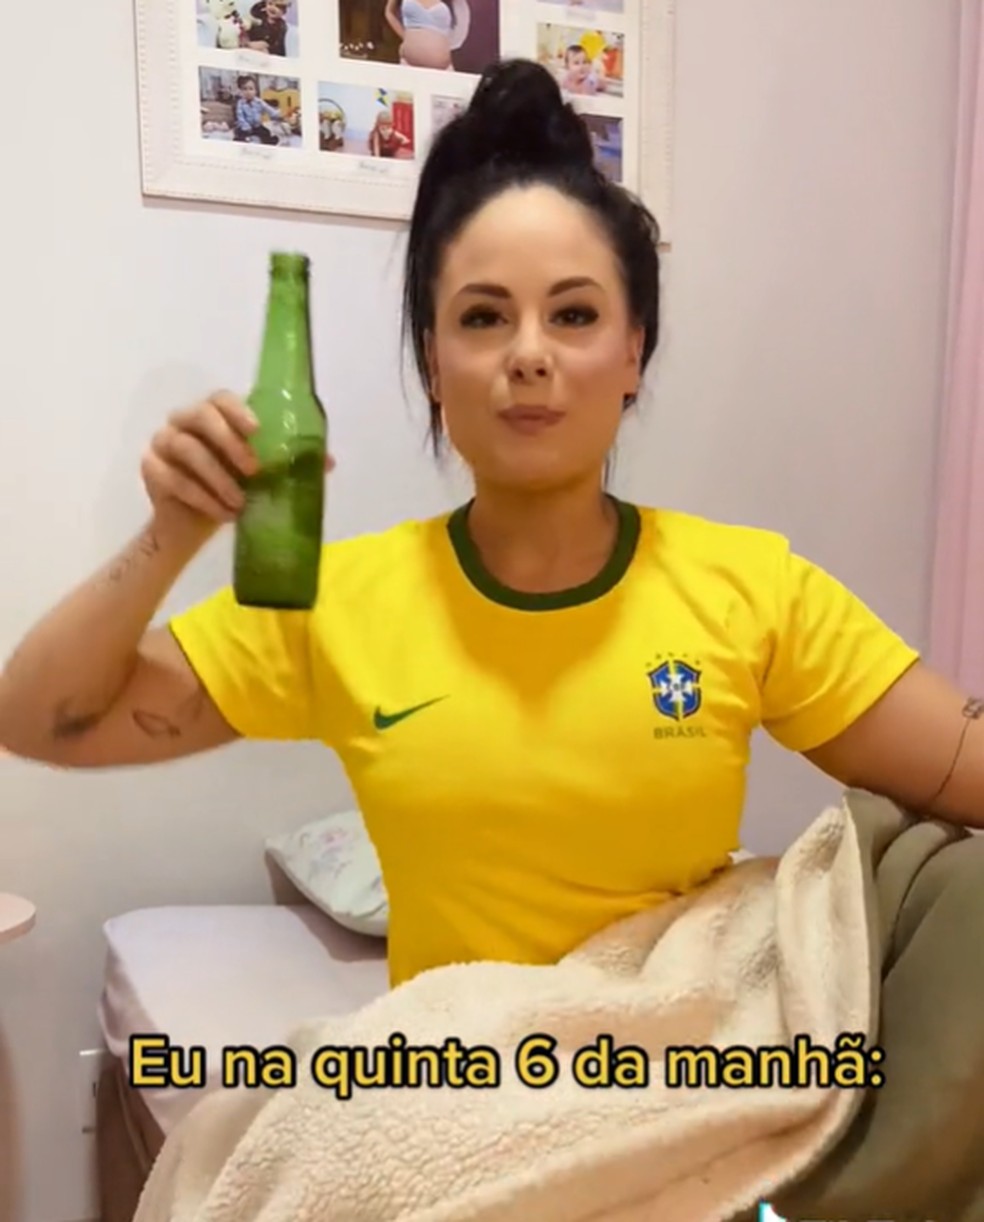 Brasil x Sérvia: veja os memes do jogo na Copa do Mundo, Copa do Catar